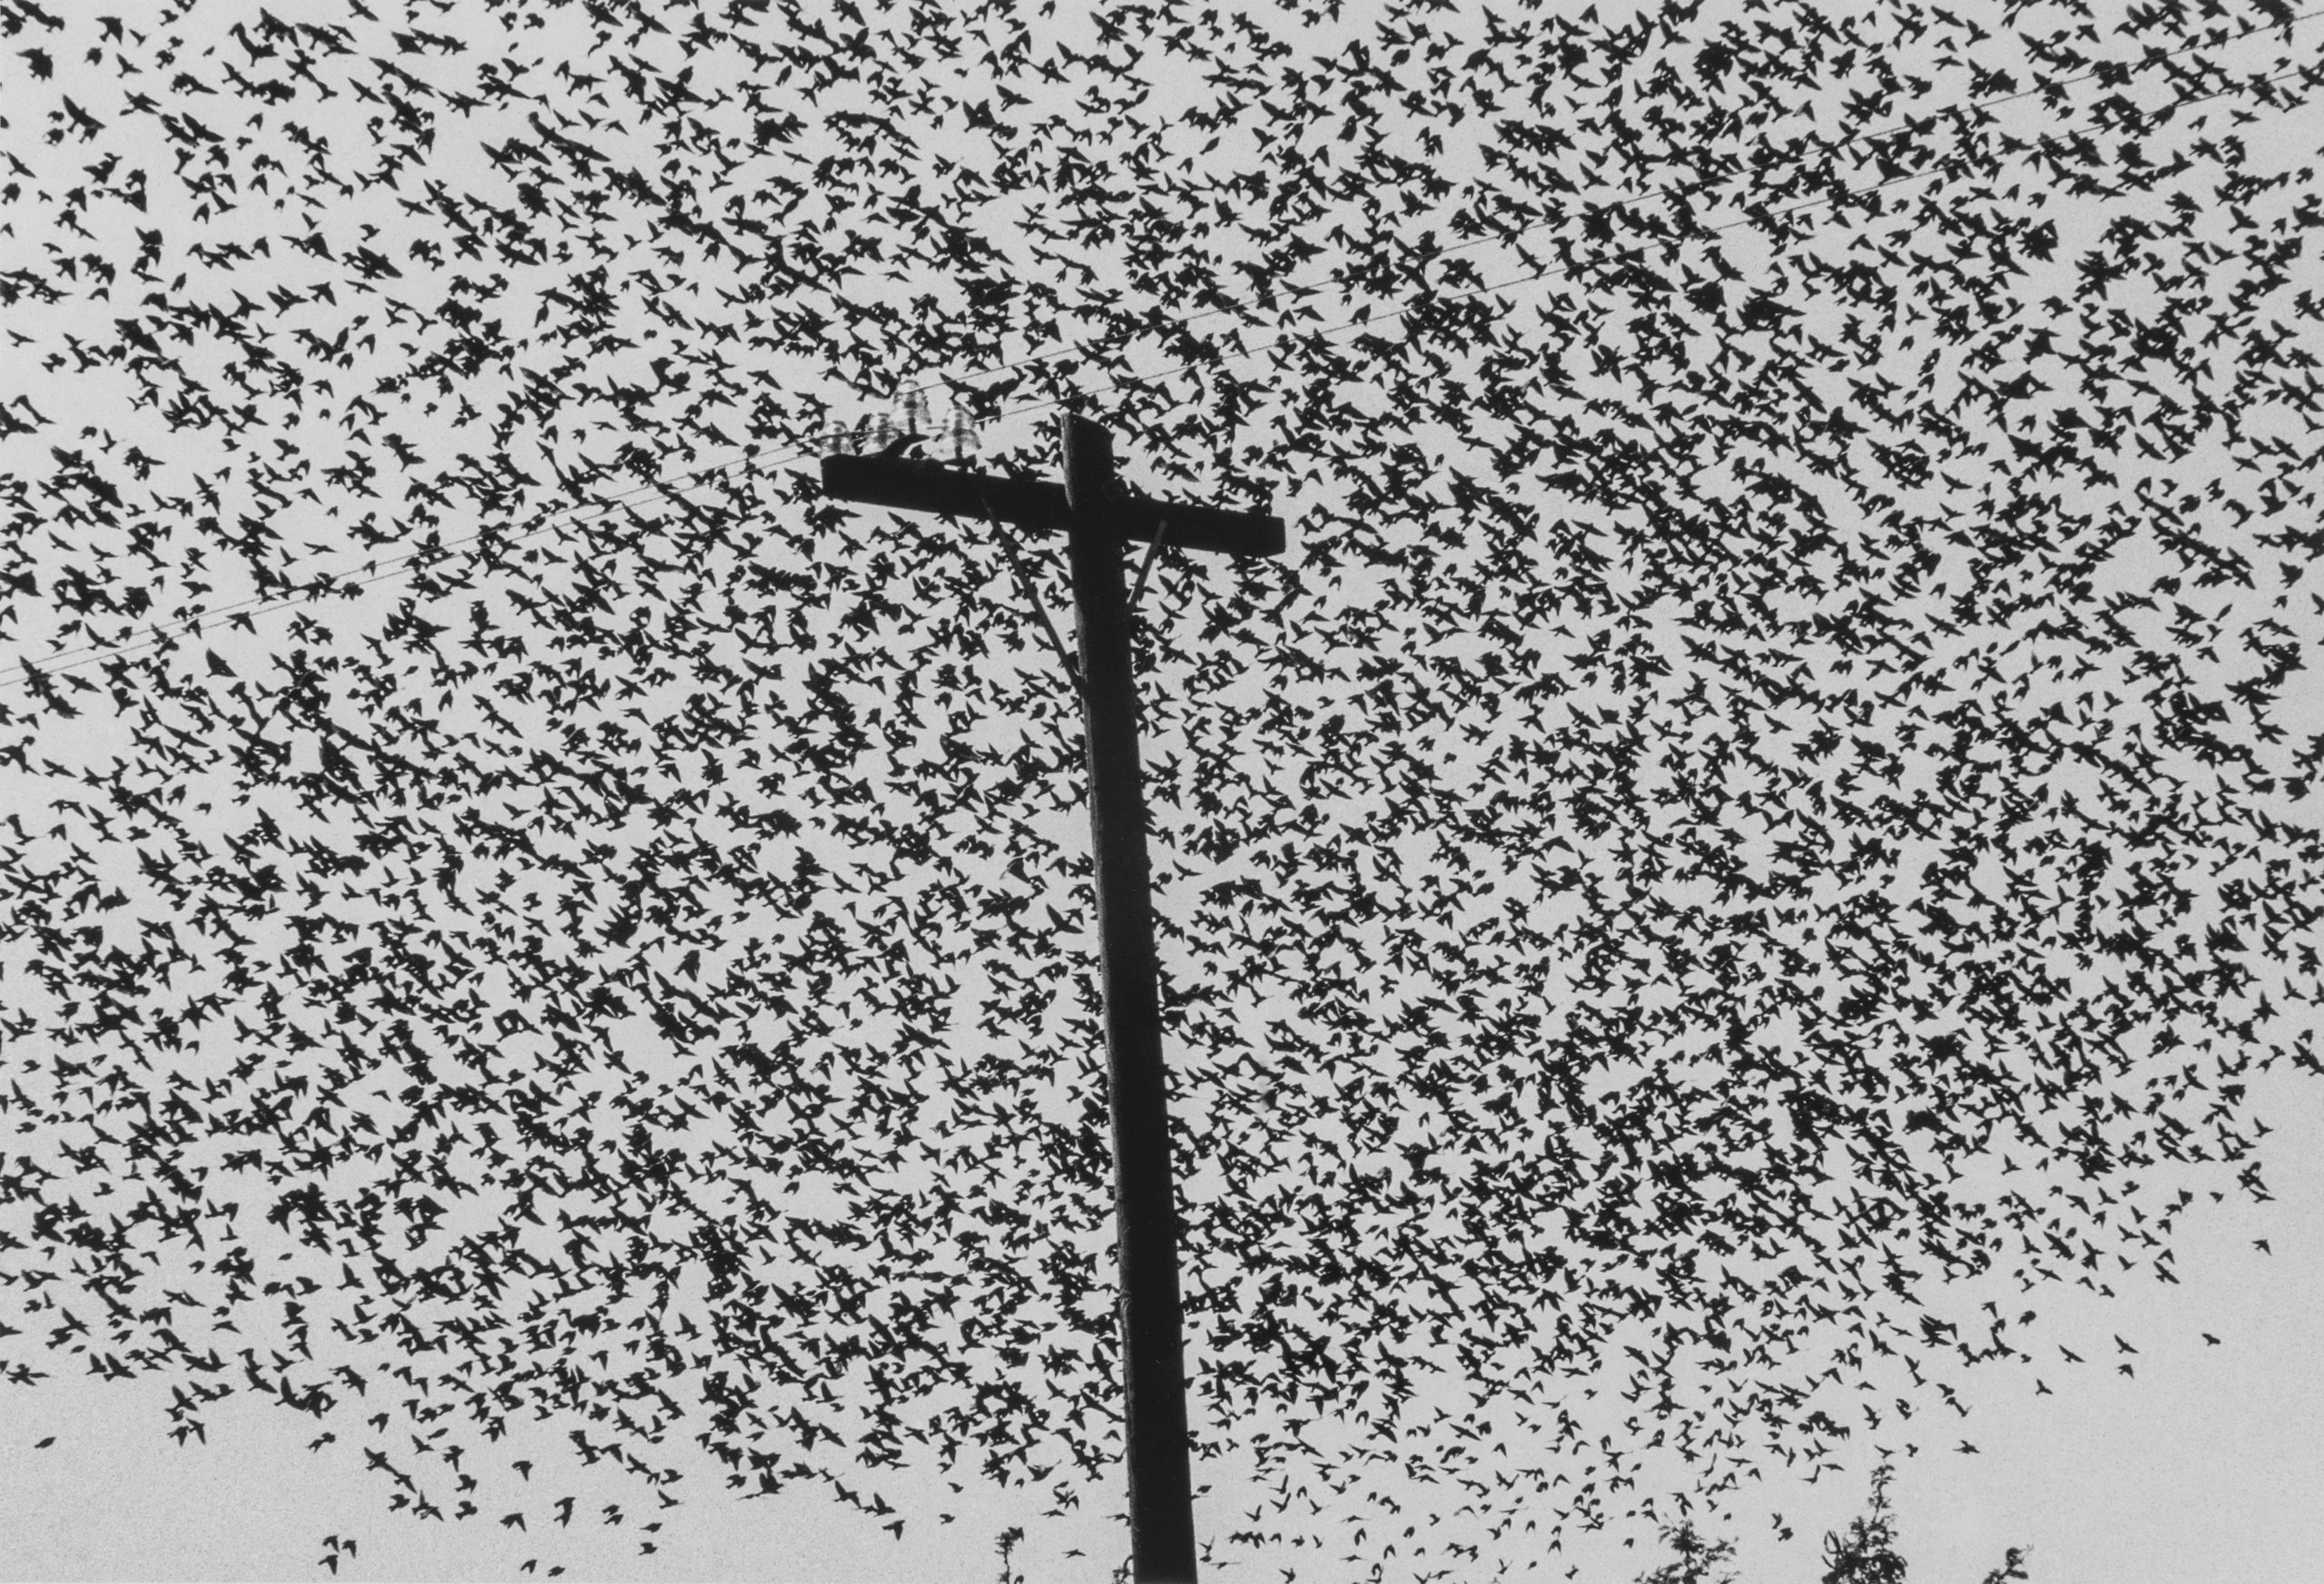 Pájaros en el Poste, Carretera [Birds on the Post, Highway], Guanajuato, 1990